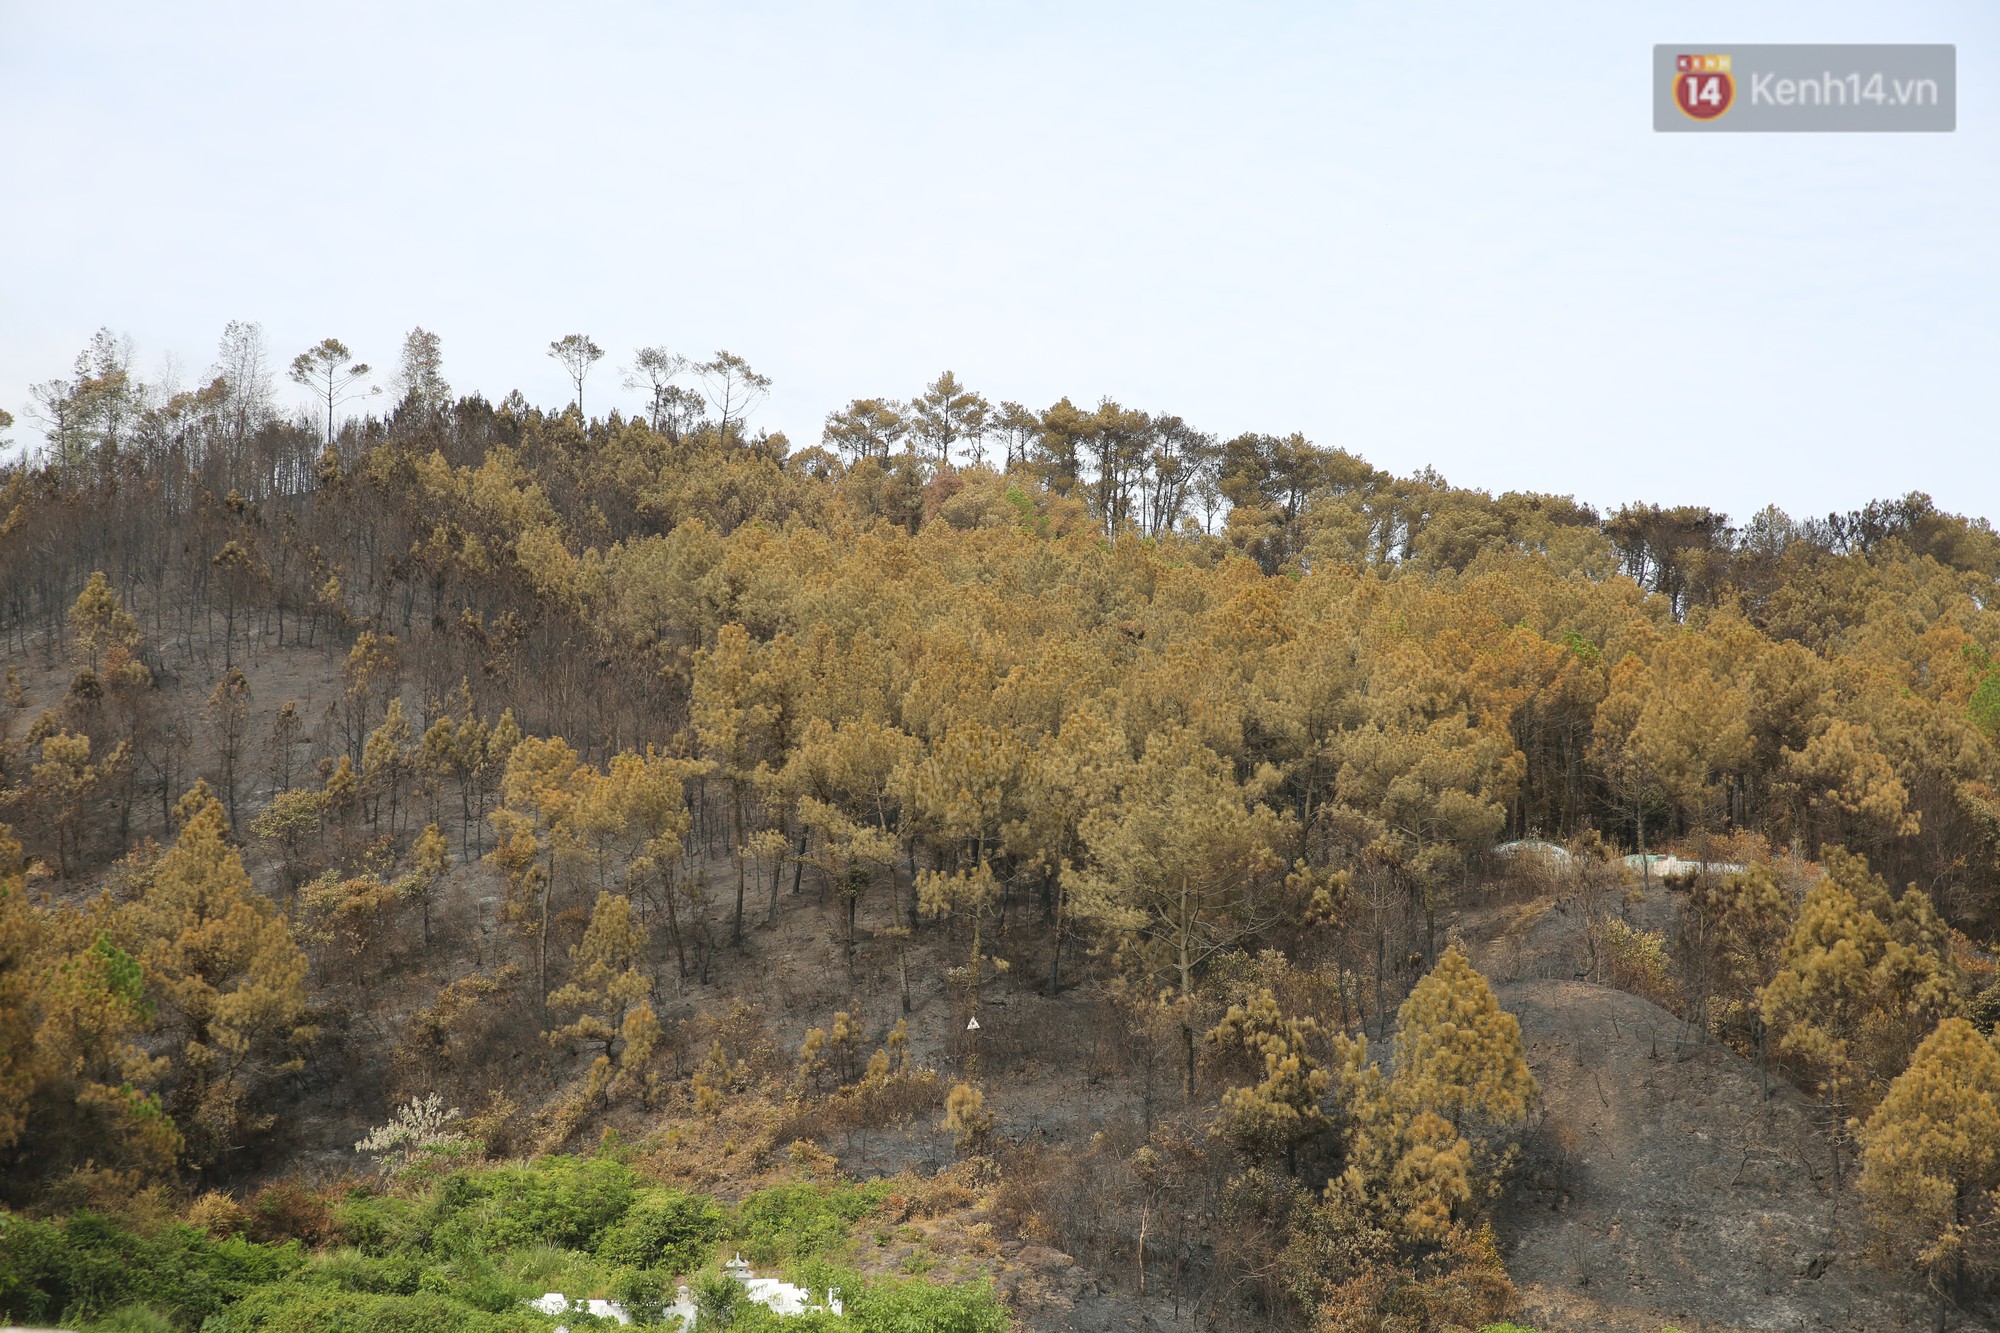 Người dân Hà Tĩnh xót xa khi 50 ha rừng phòng hộ hoang tàn vì cháy: Đó là một đêm thức trọn với lửa của núi Hồng Lĩnh - Ảnh 2.